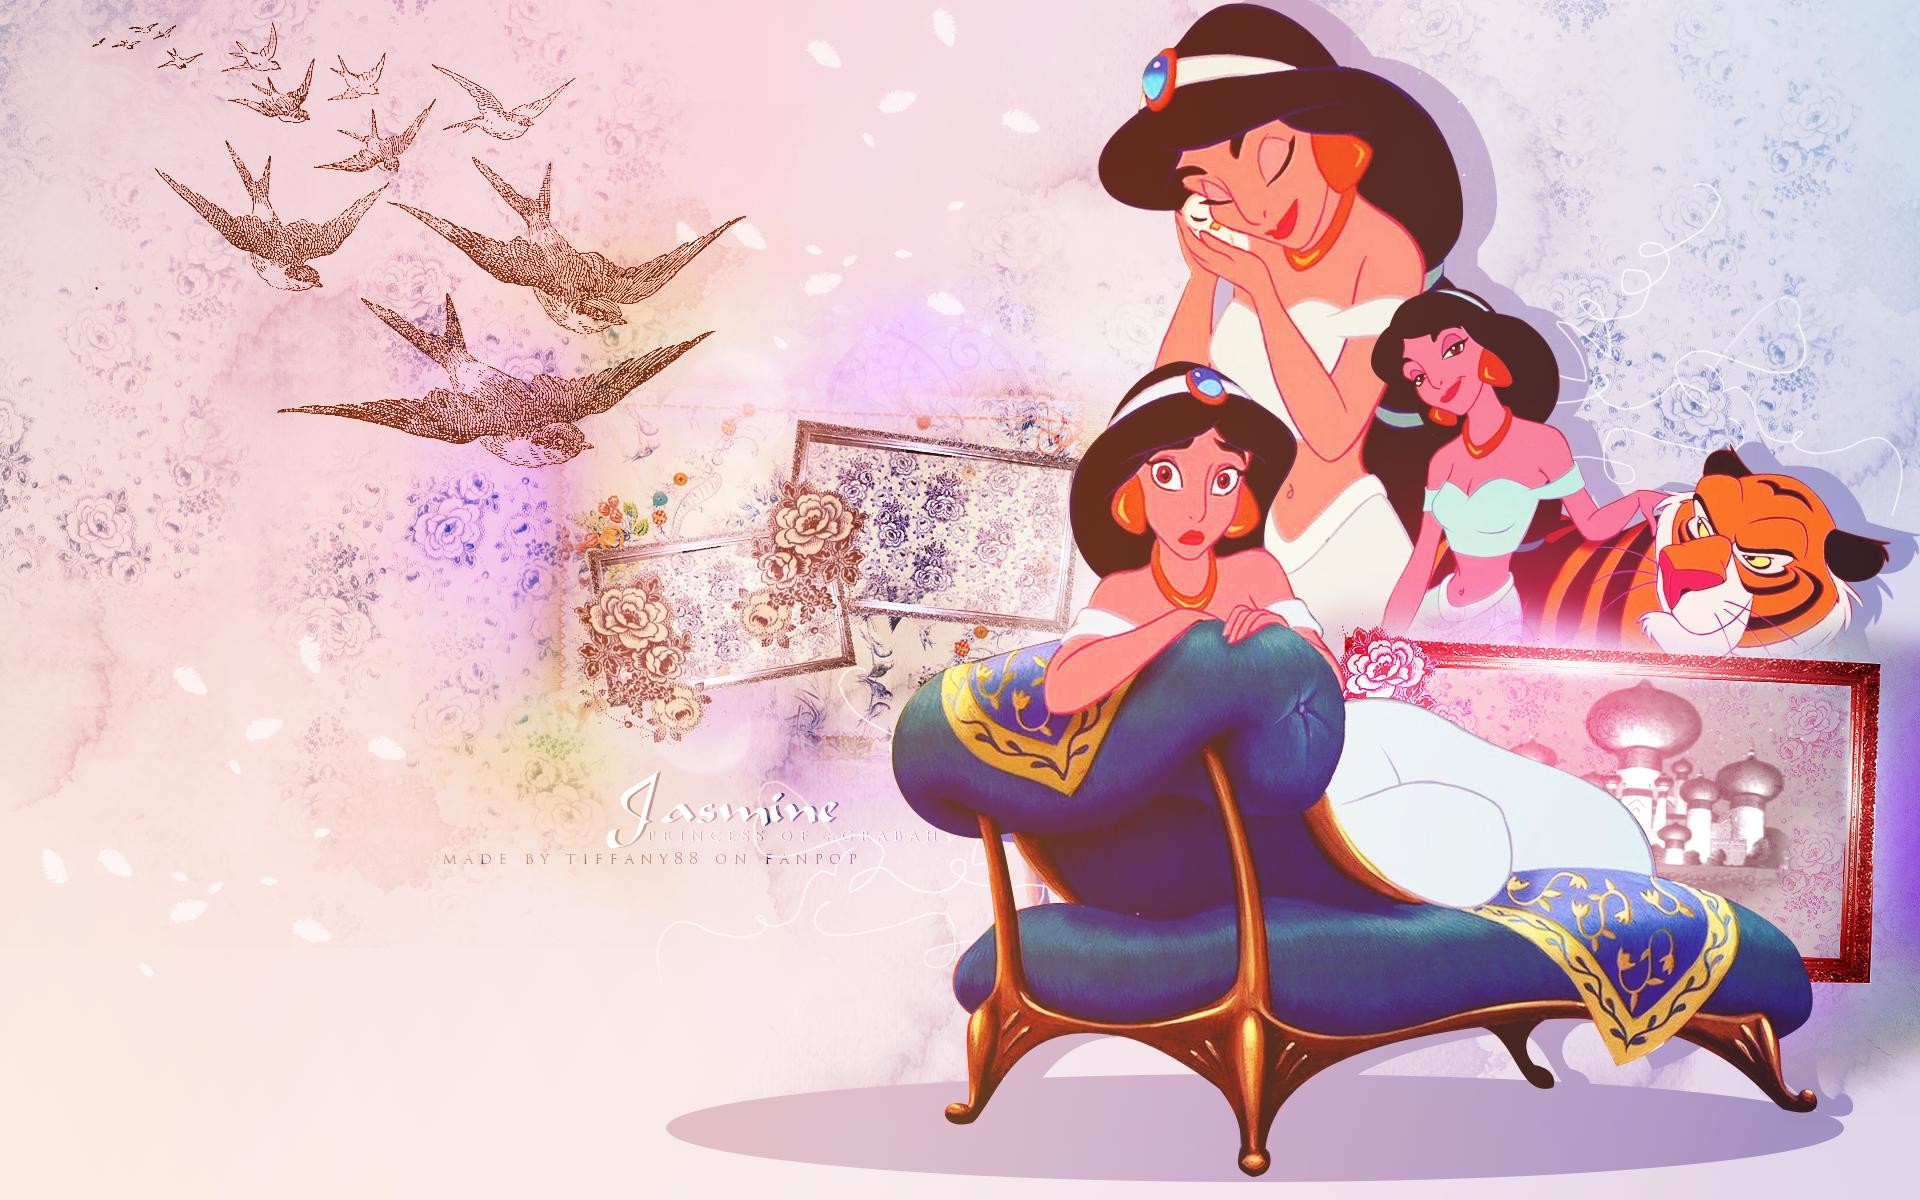 1920x1200 ... Jasmine Wallpapers - Wallpaper Cave Disney Princess Wallpaper Images -  WallpaperSafari ...